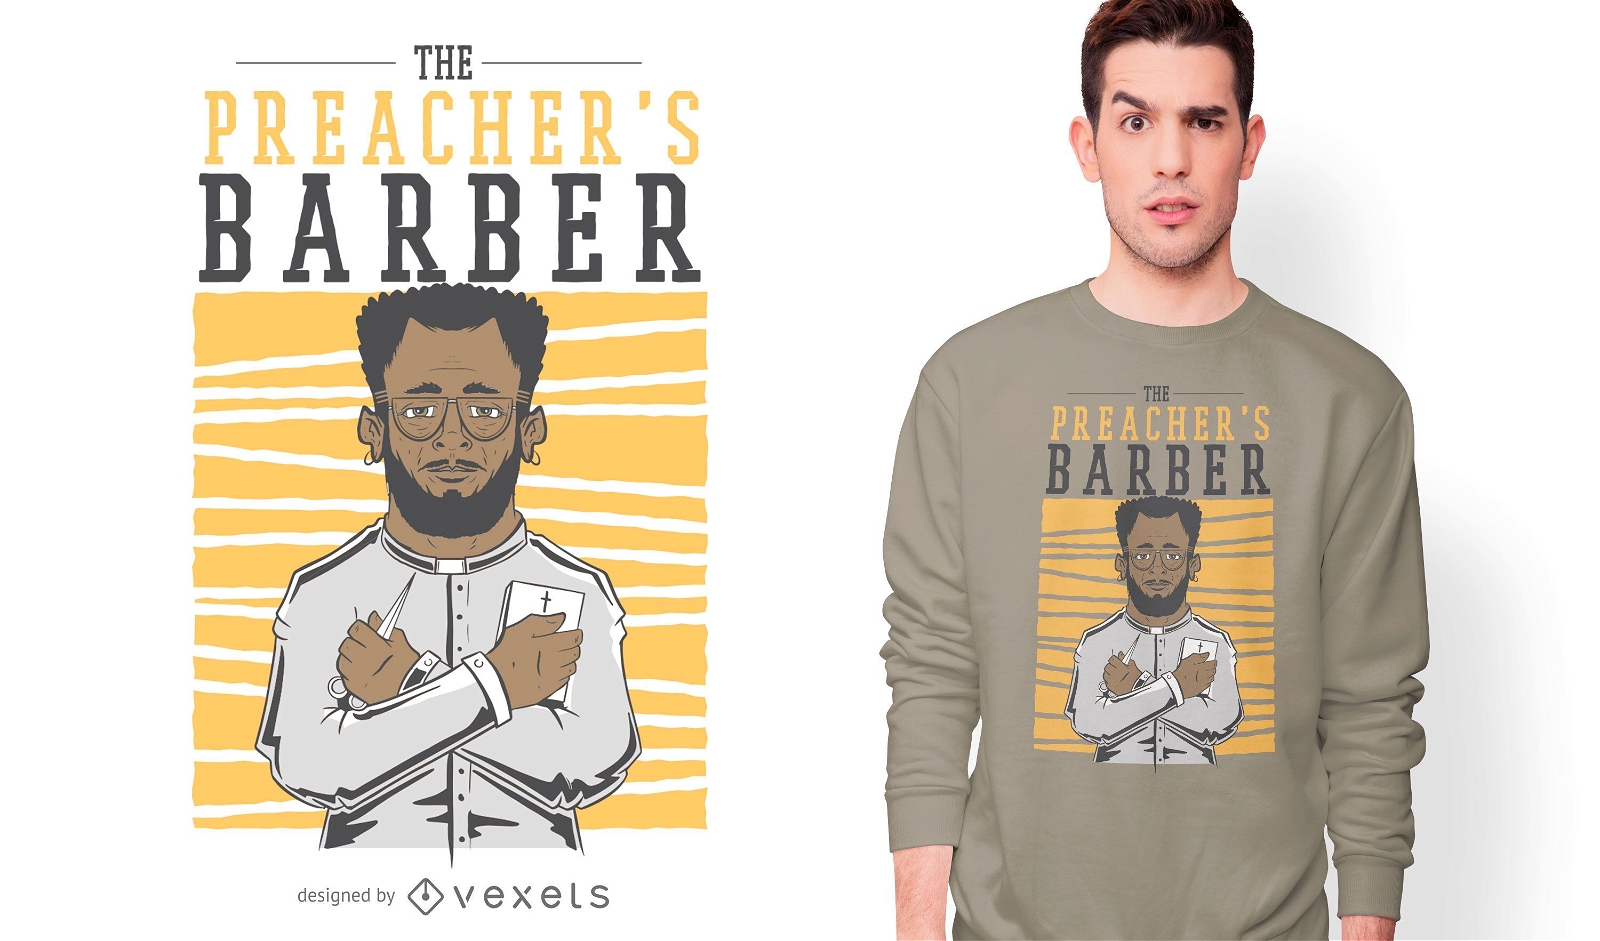 Preacher's barber t-shirt design